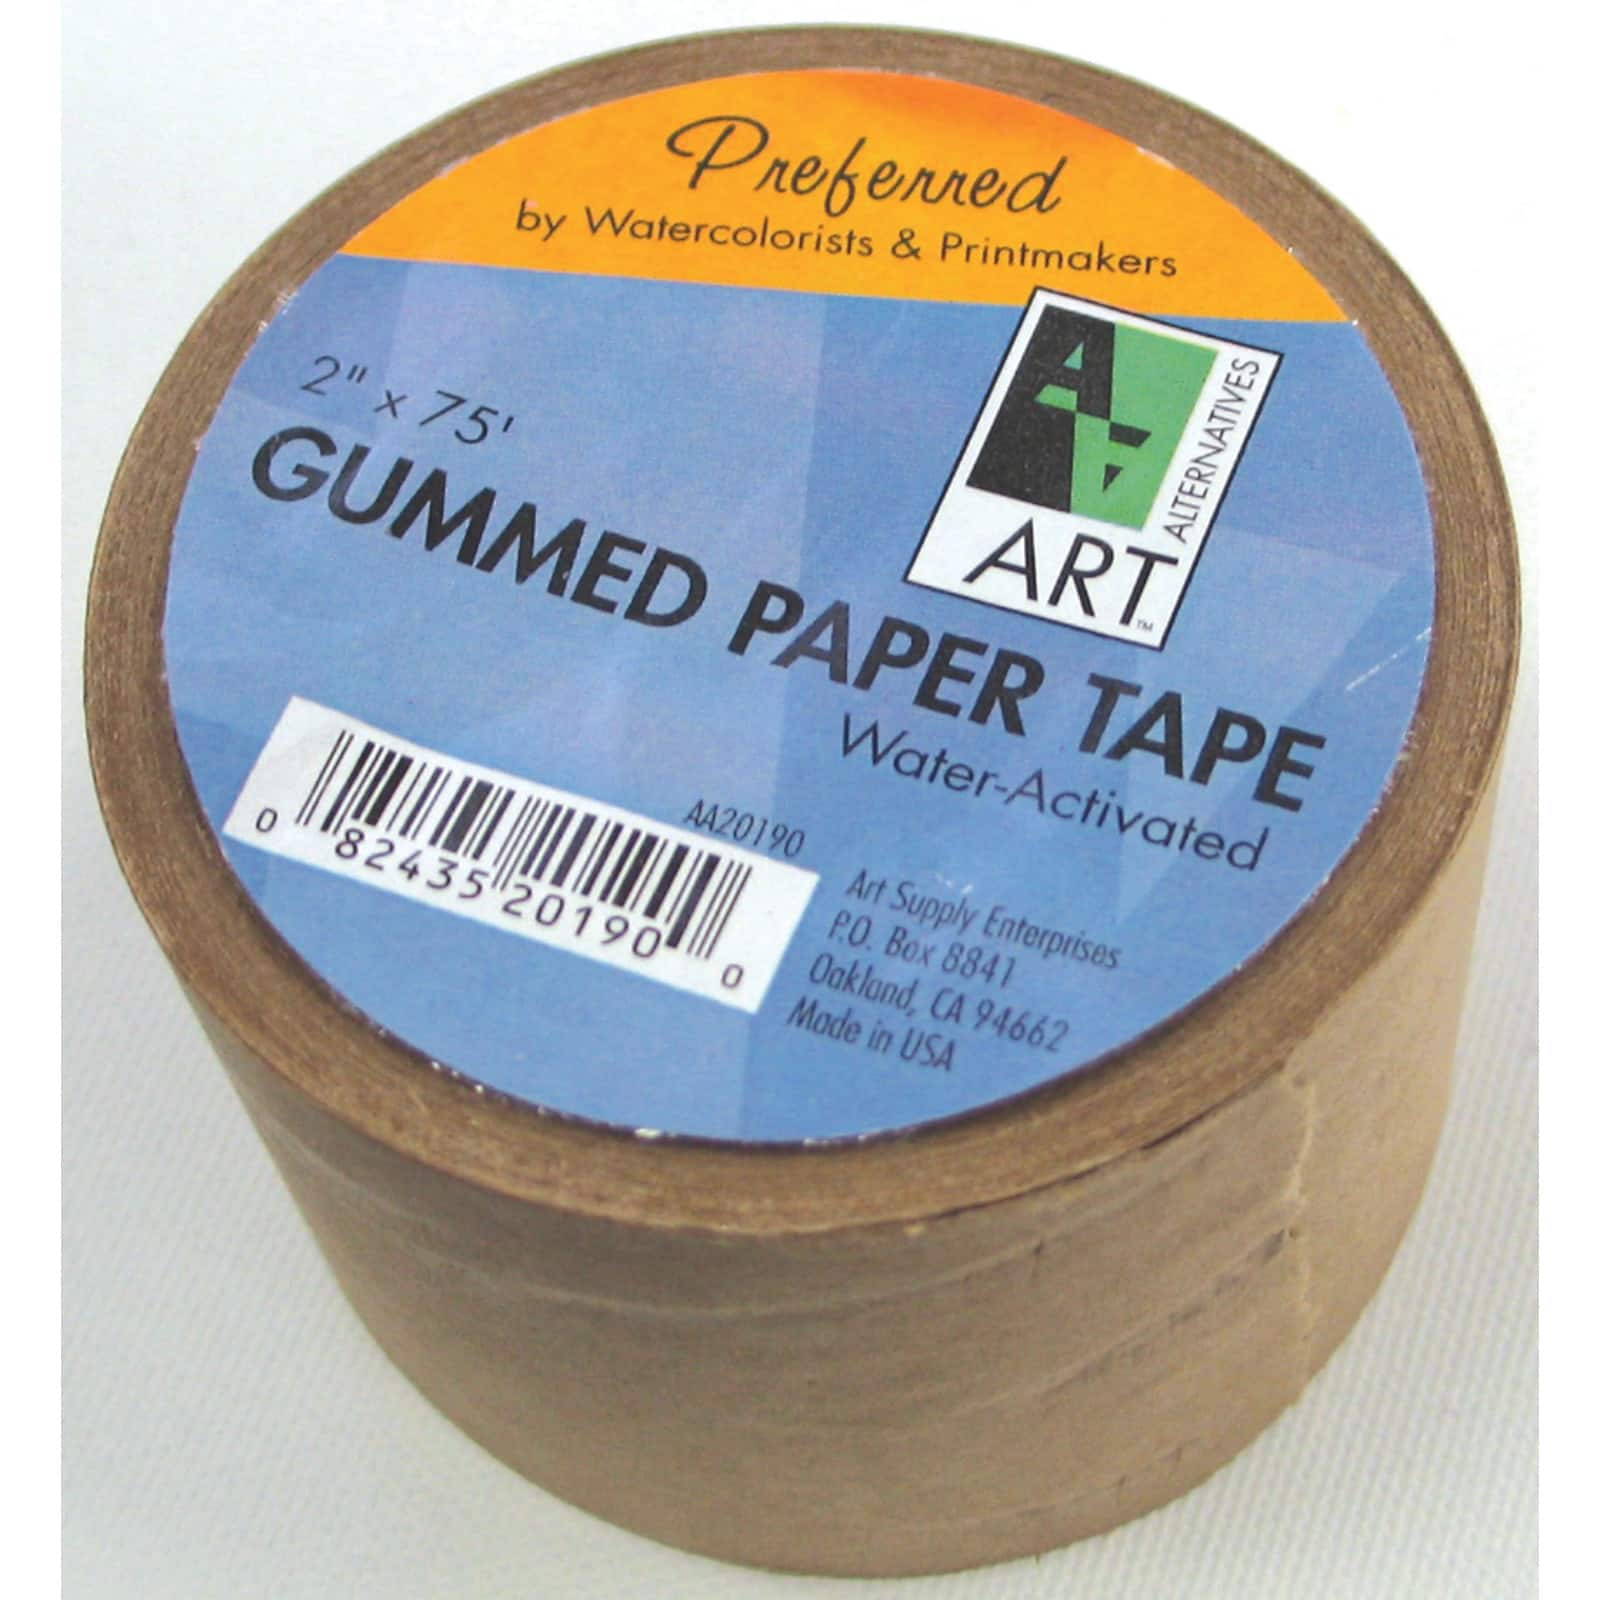 24 Pack: Art Alternatives Gummed Paper Tape